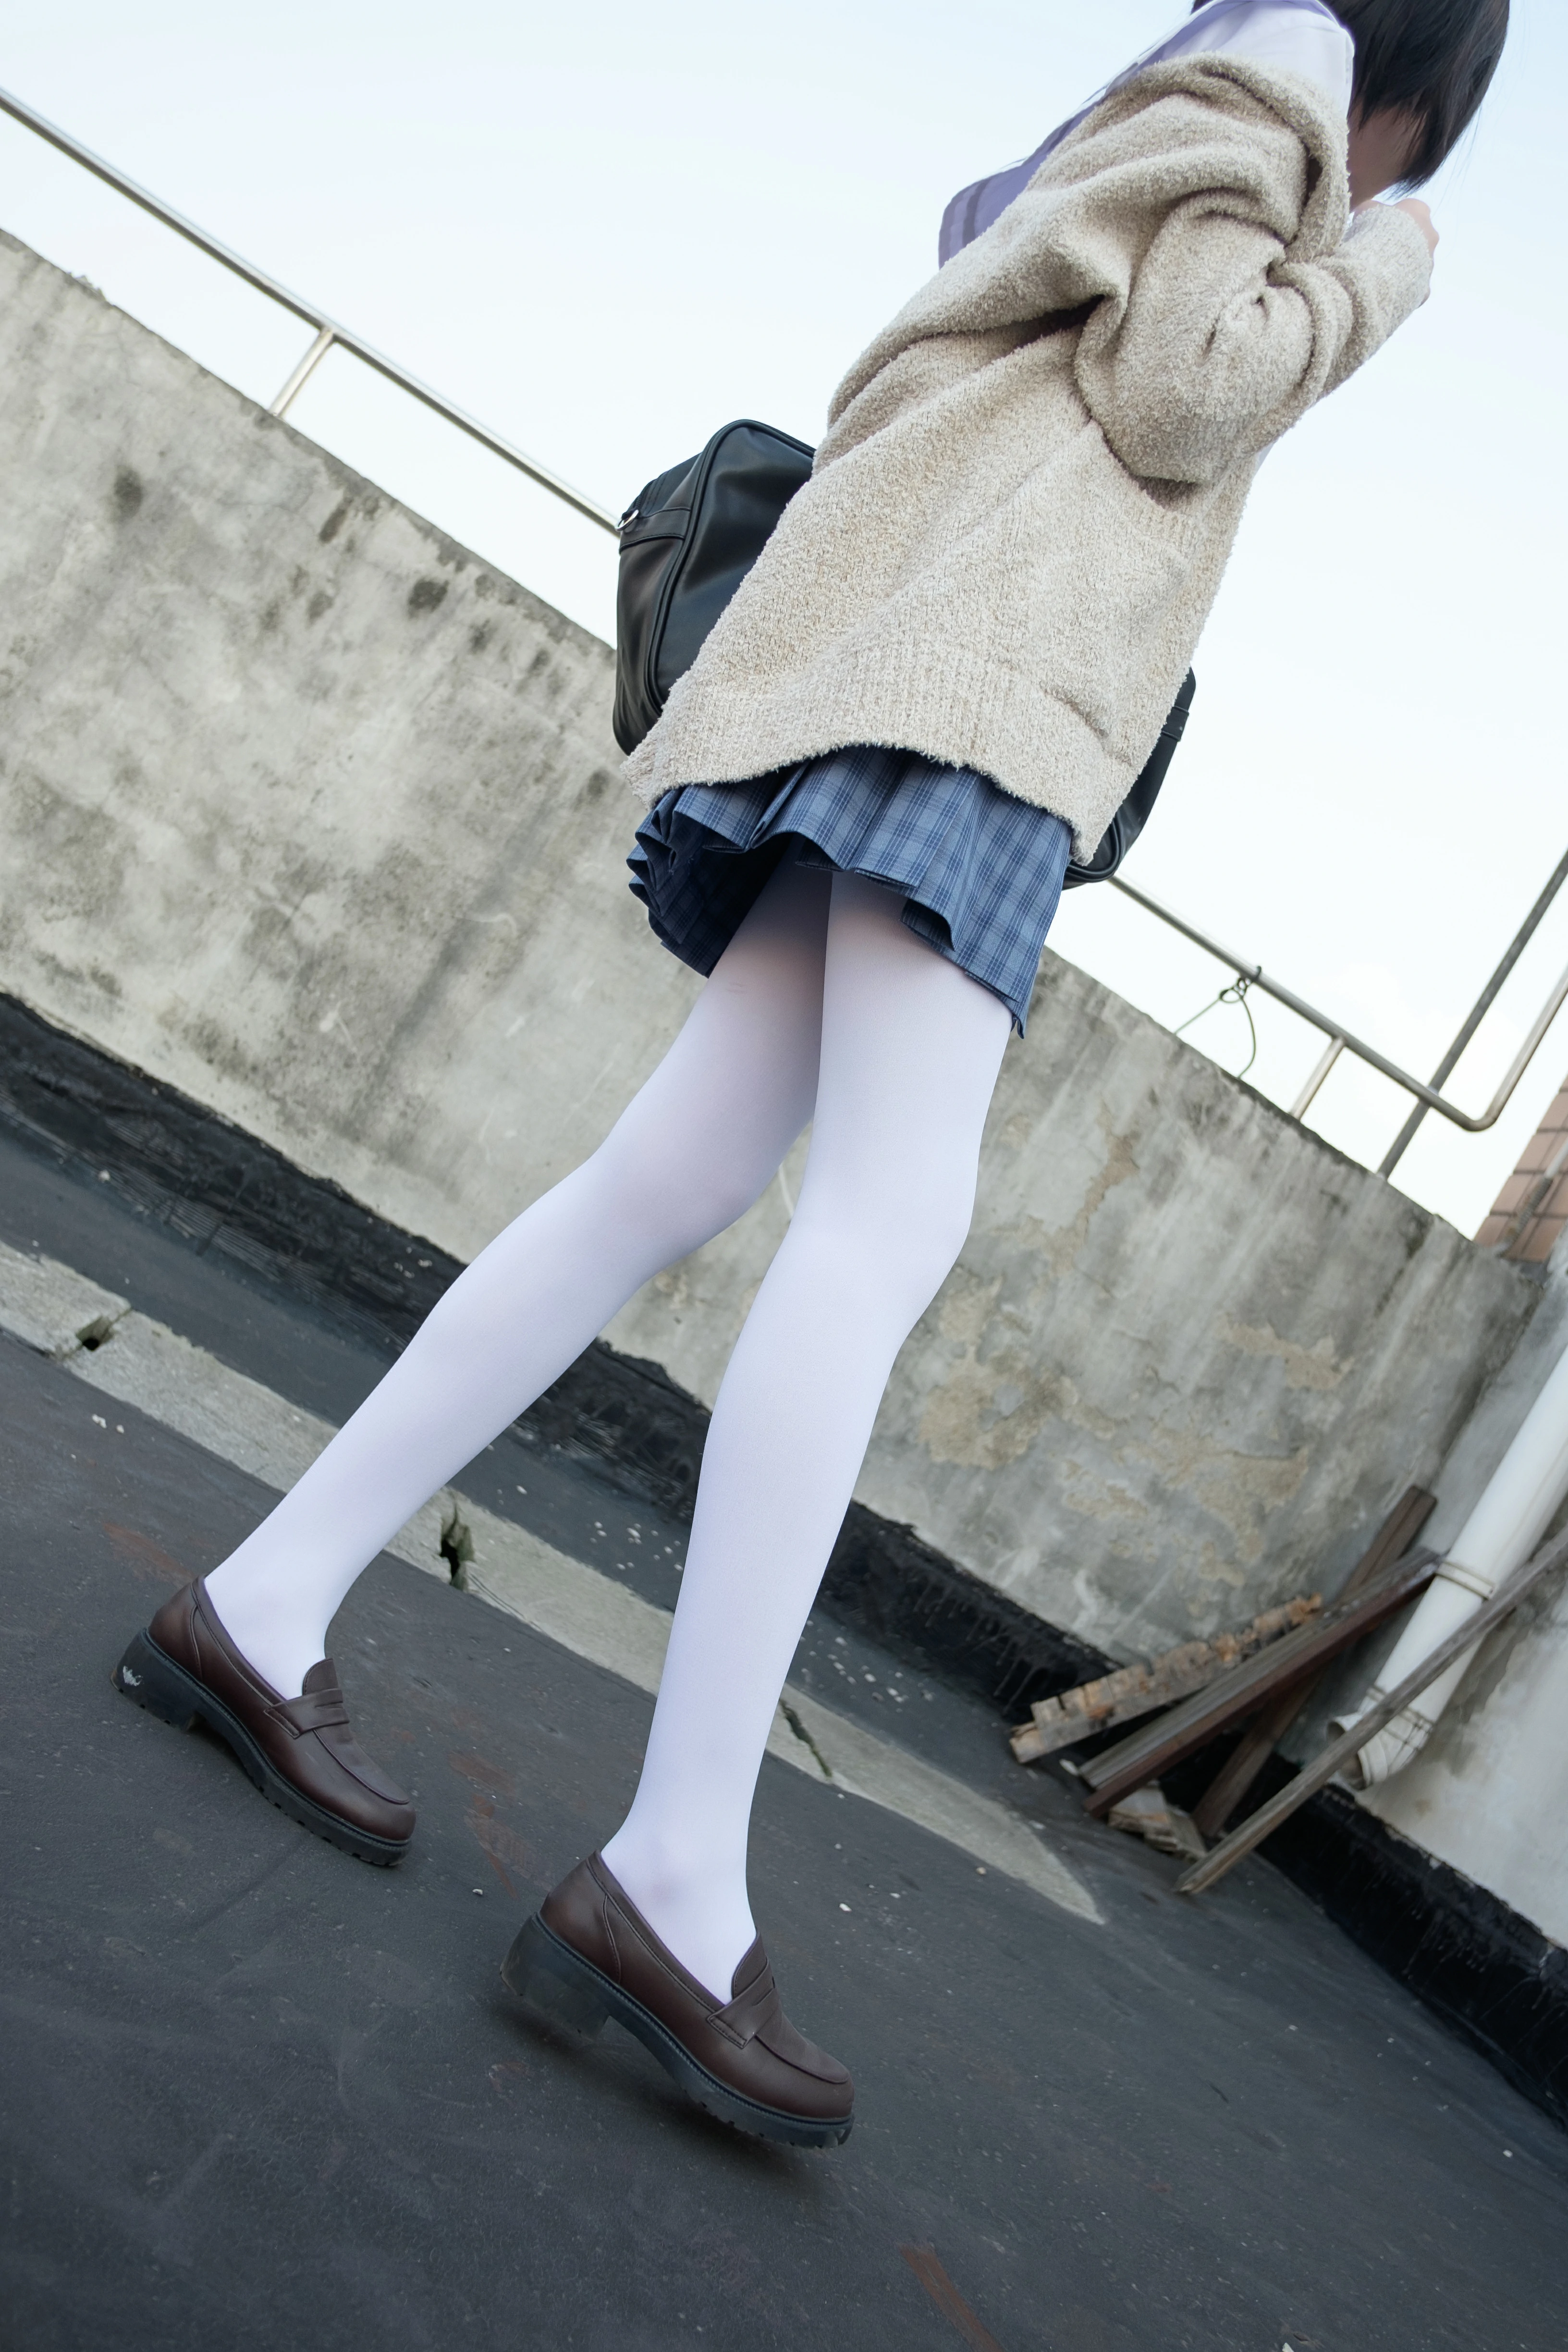 [森萝财团]SSR-001 白丝学生装 性感小萝莉 白色高中女生制服与短裙加白色丝袜美腿私房写真集,